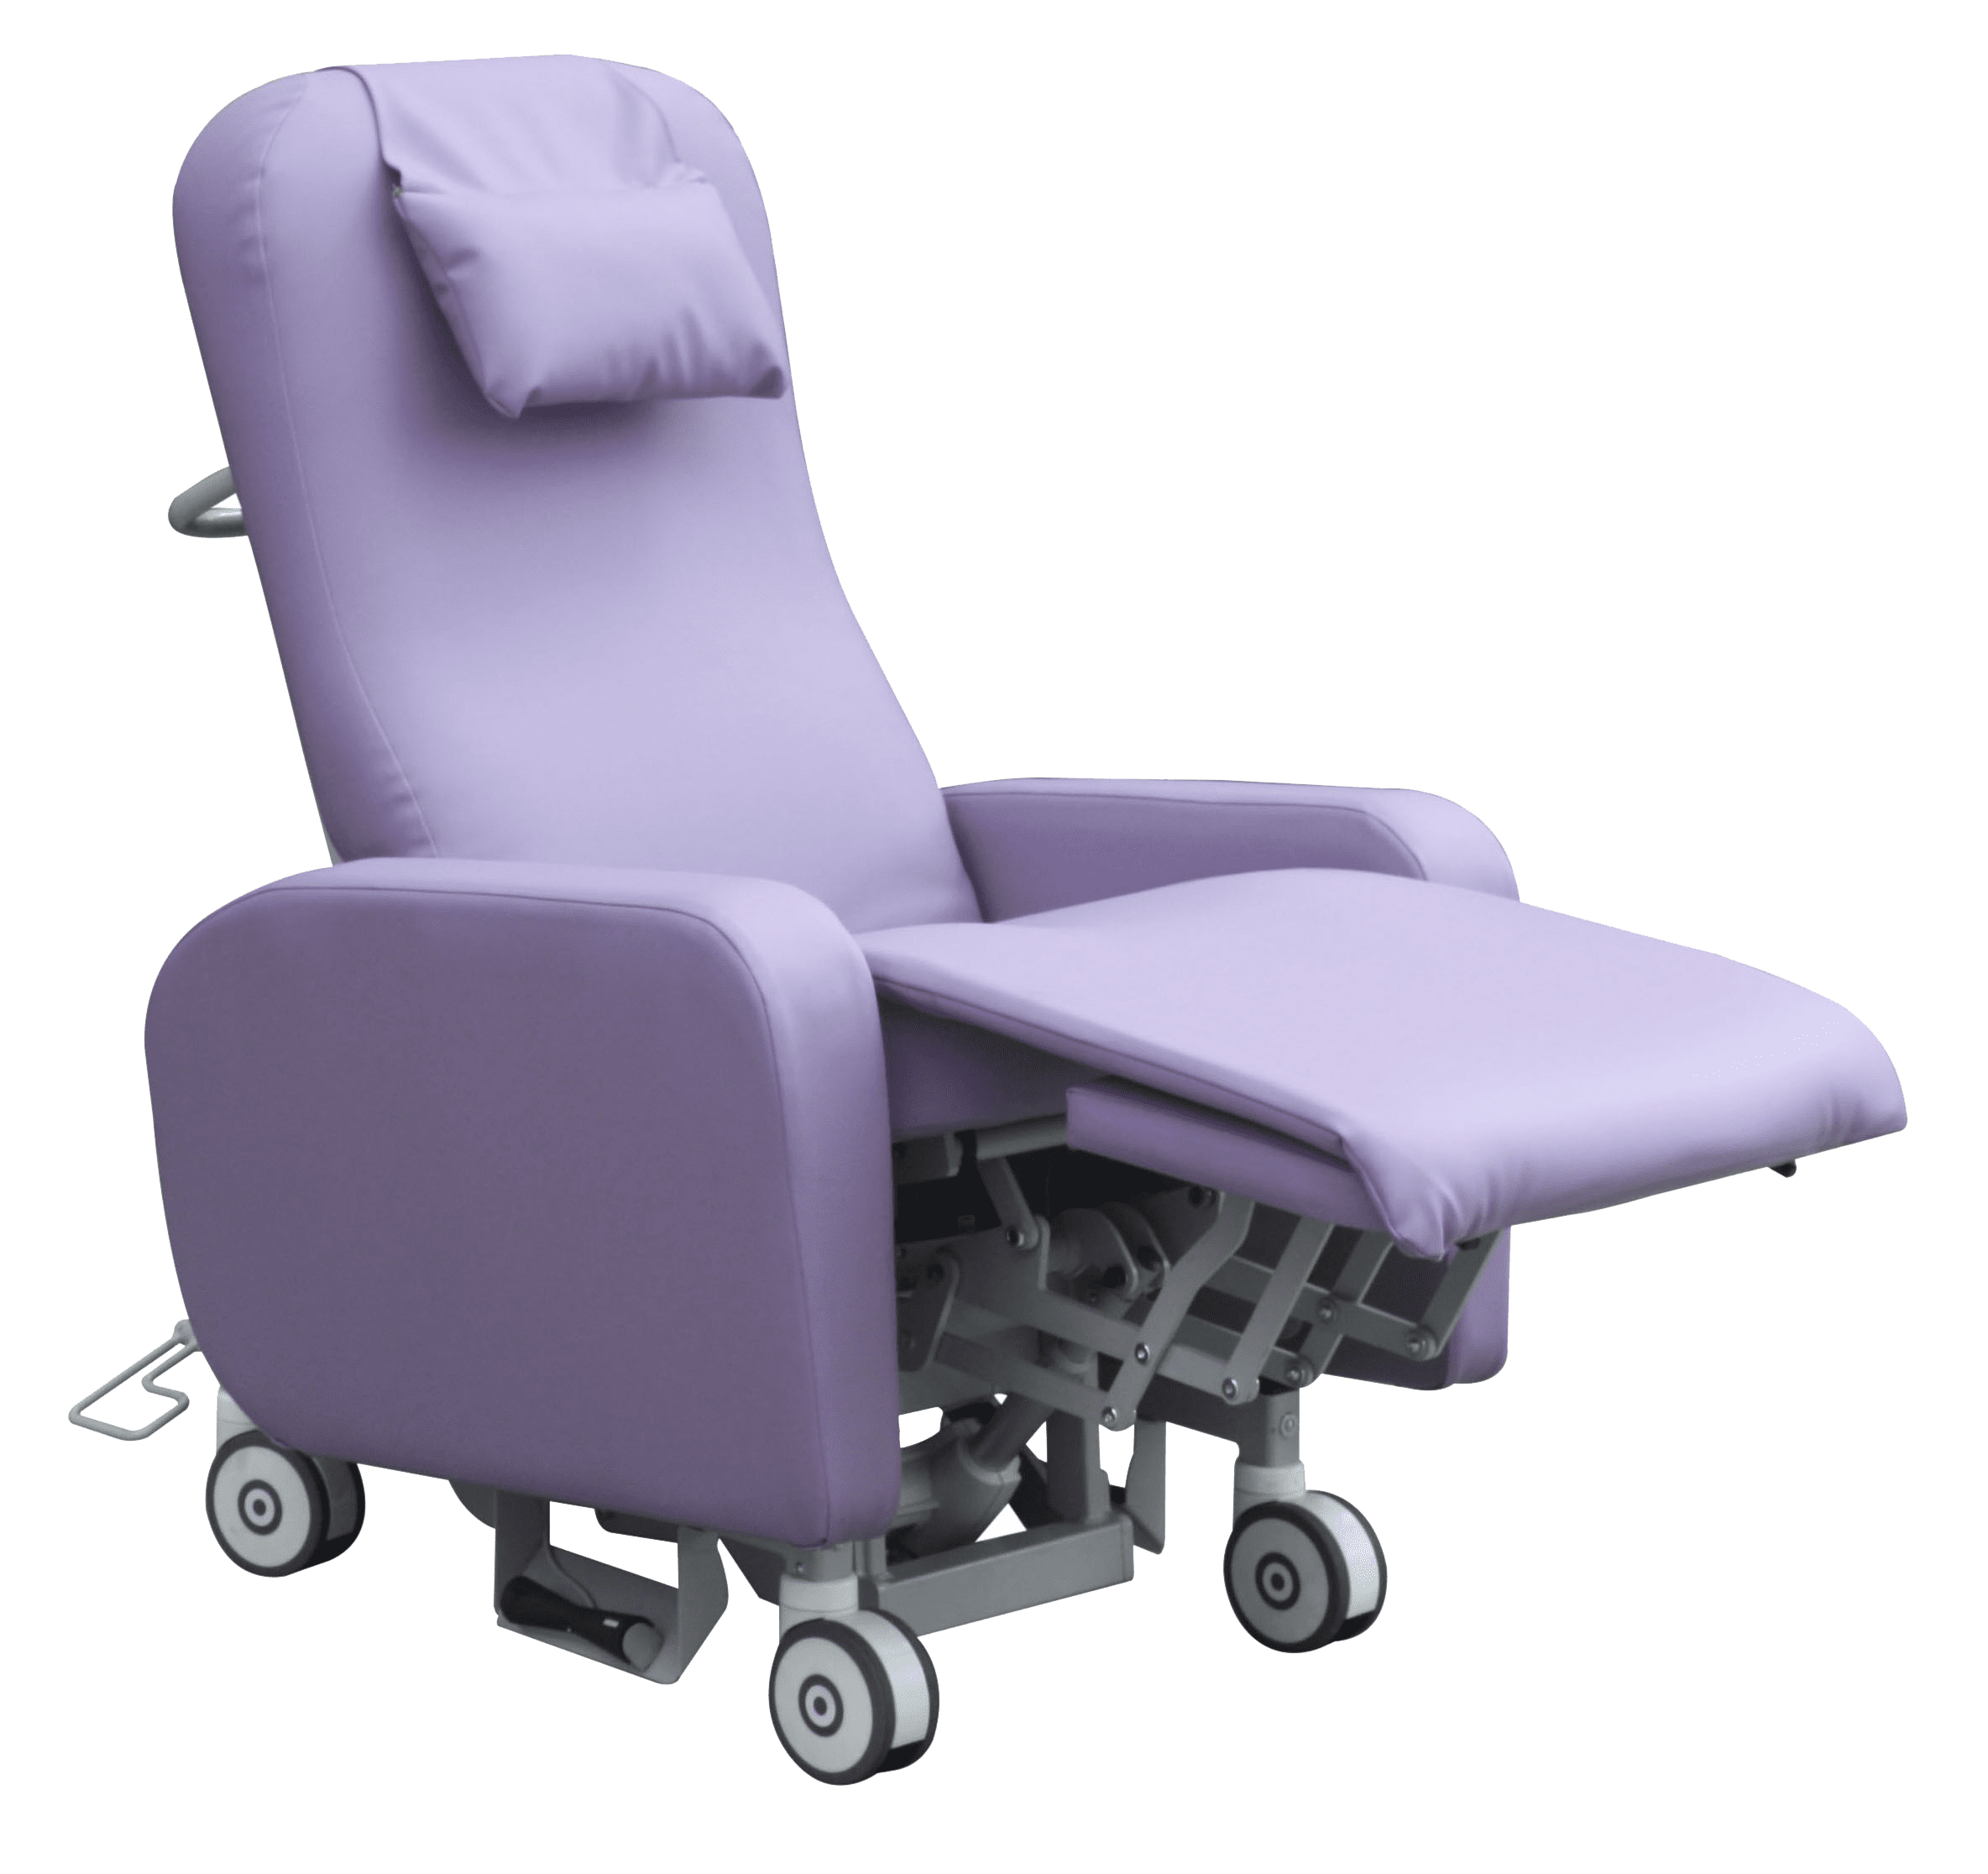 Dalcross-treatment-recliner-chair